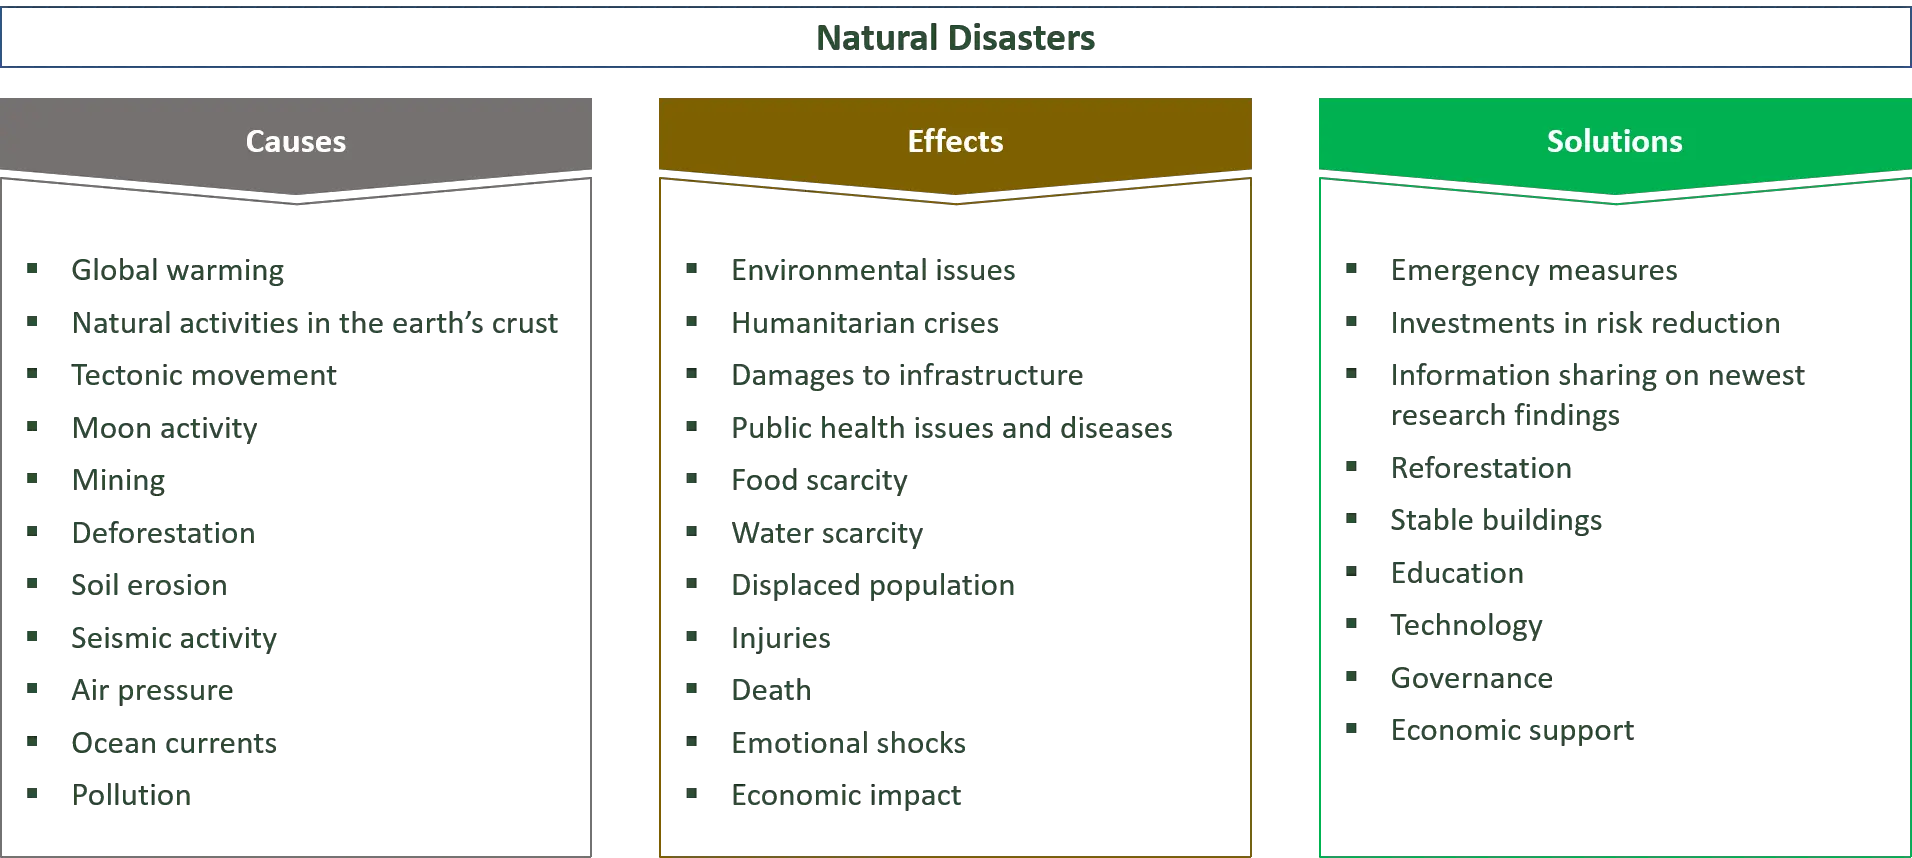 årsaker, effekter og løsninger for naturkatastrofer